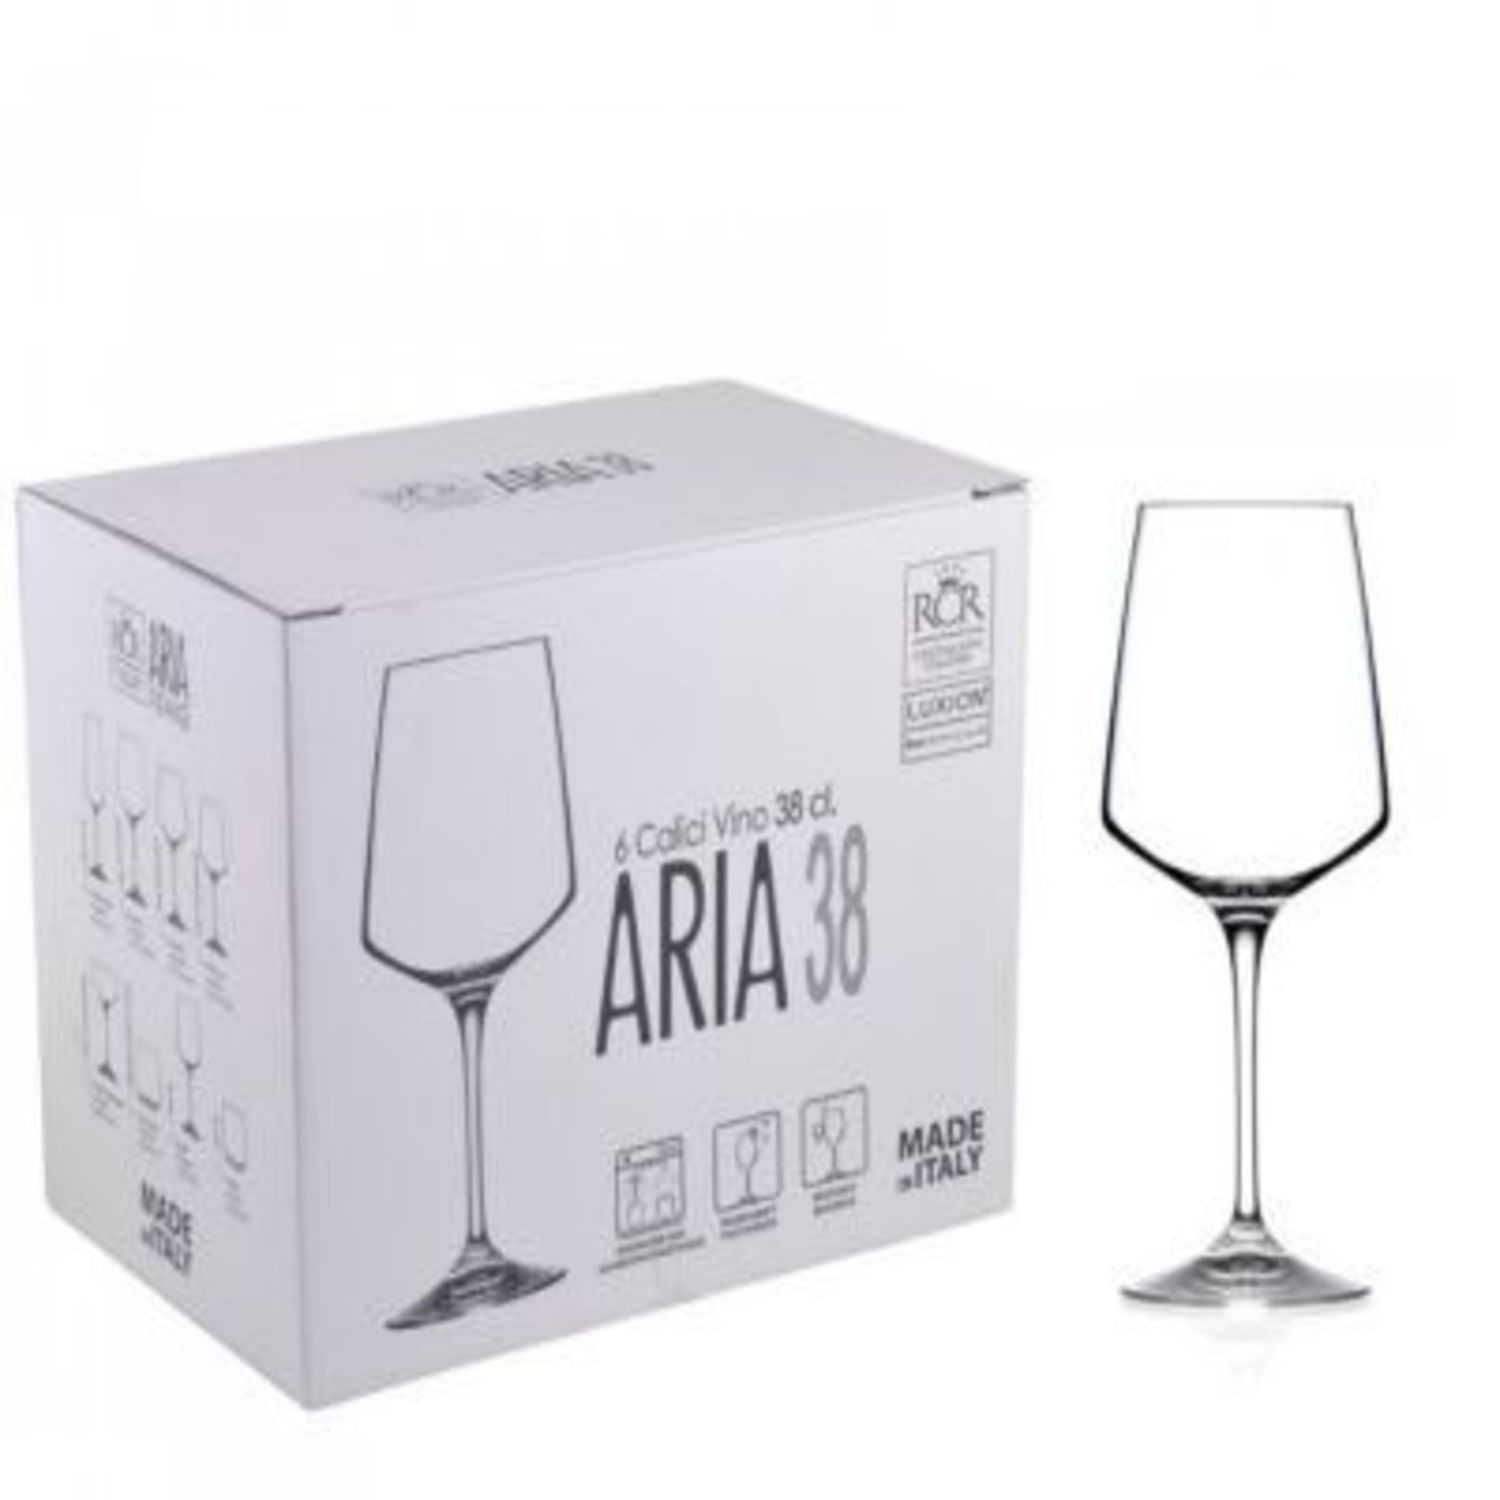 Set de Copas de Vino 38 Cl RCR Colección ARIA X6 Hecho en Italia